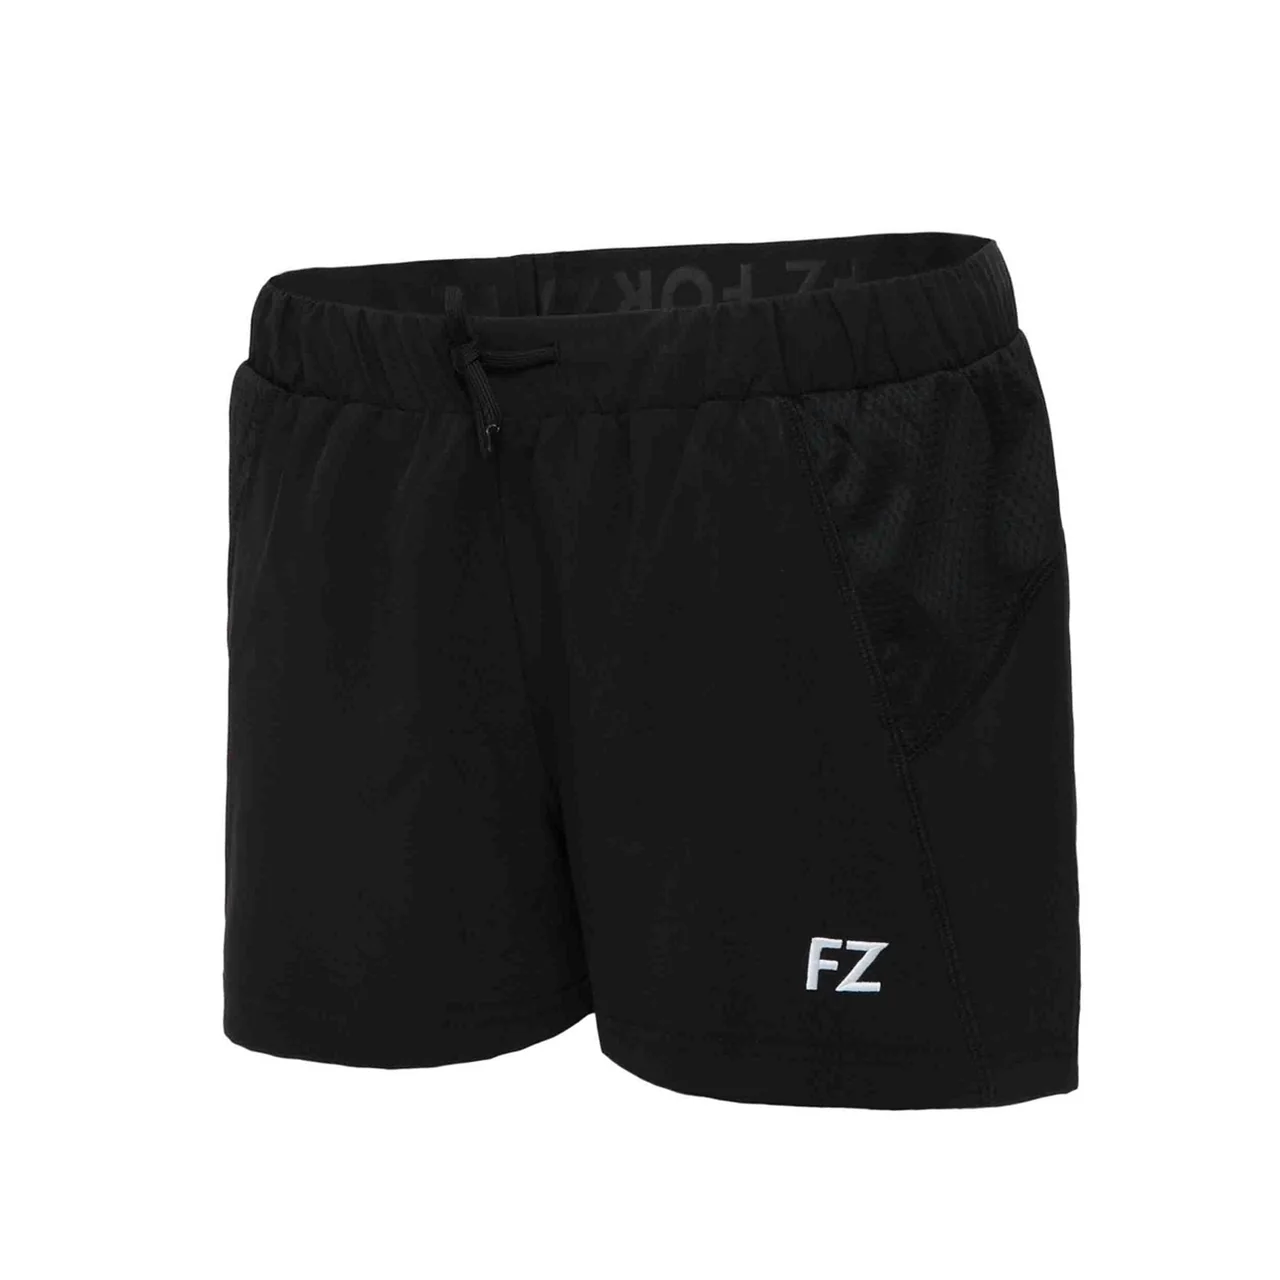 FZ Forza Lana Girl Shorts Black